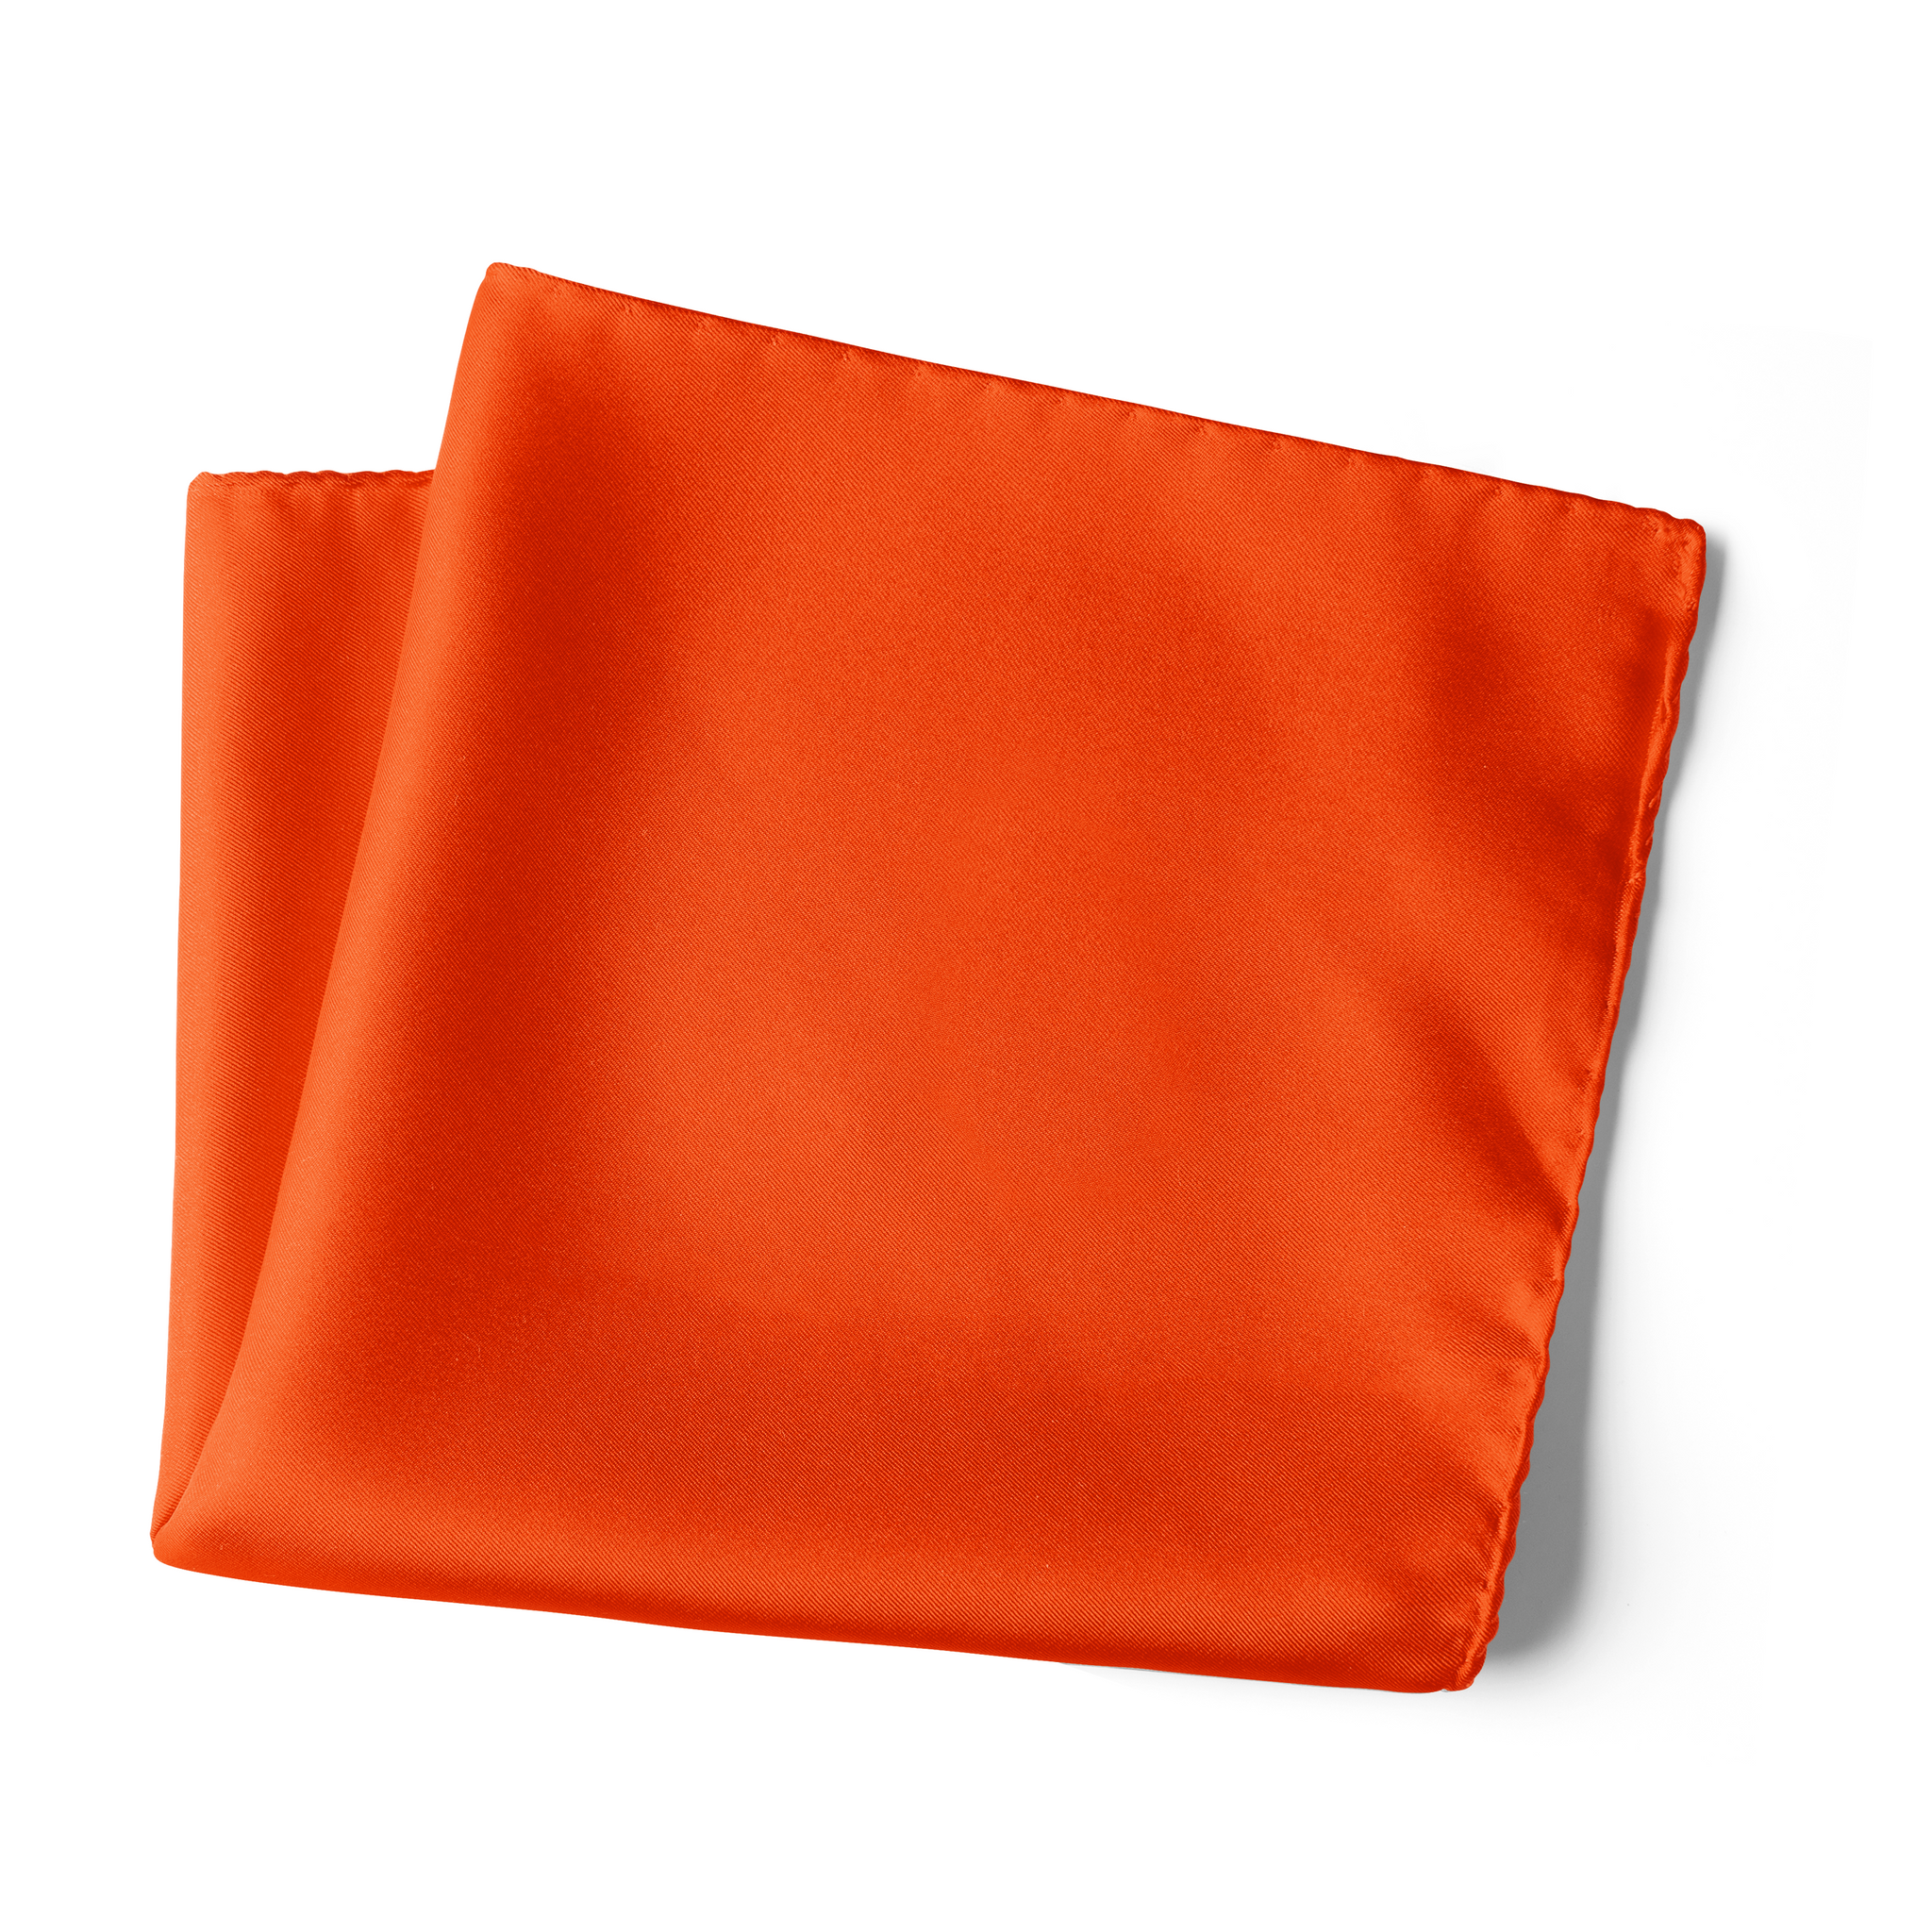 Chokore Saffron Pure Silk Pocket Square, from the Solids Line